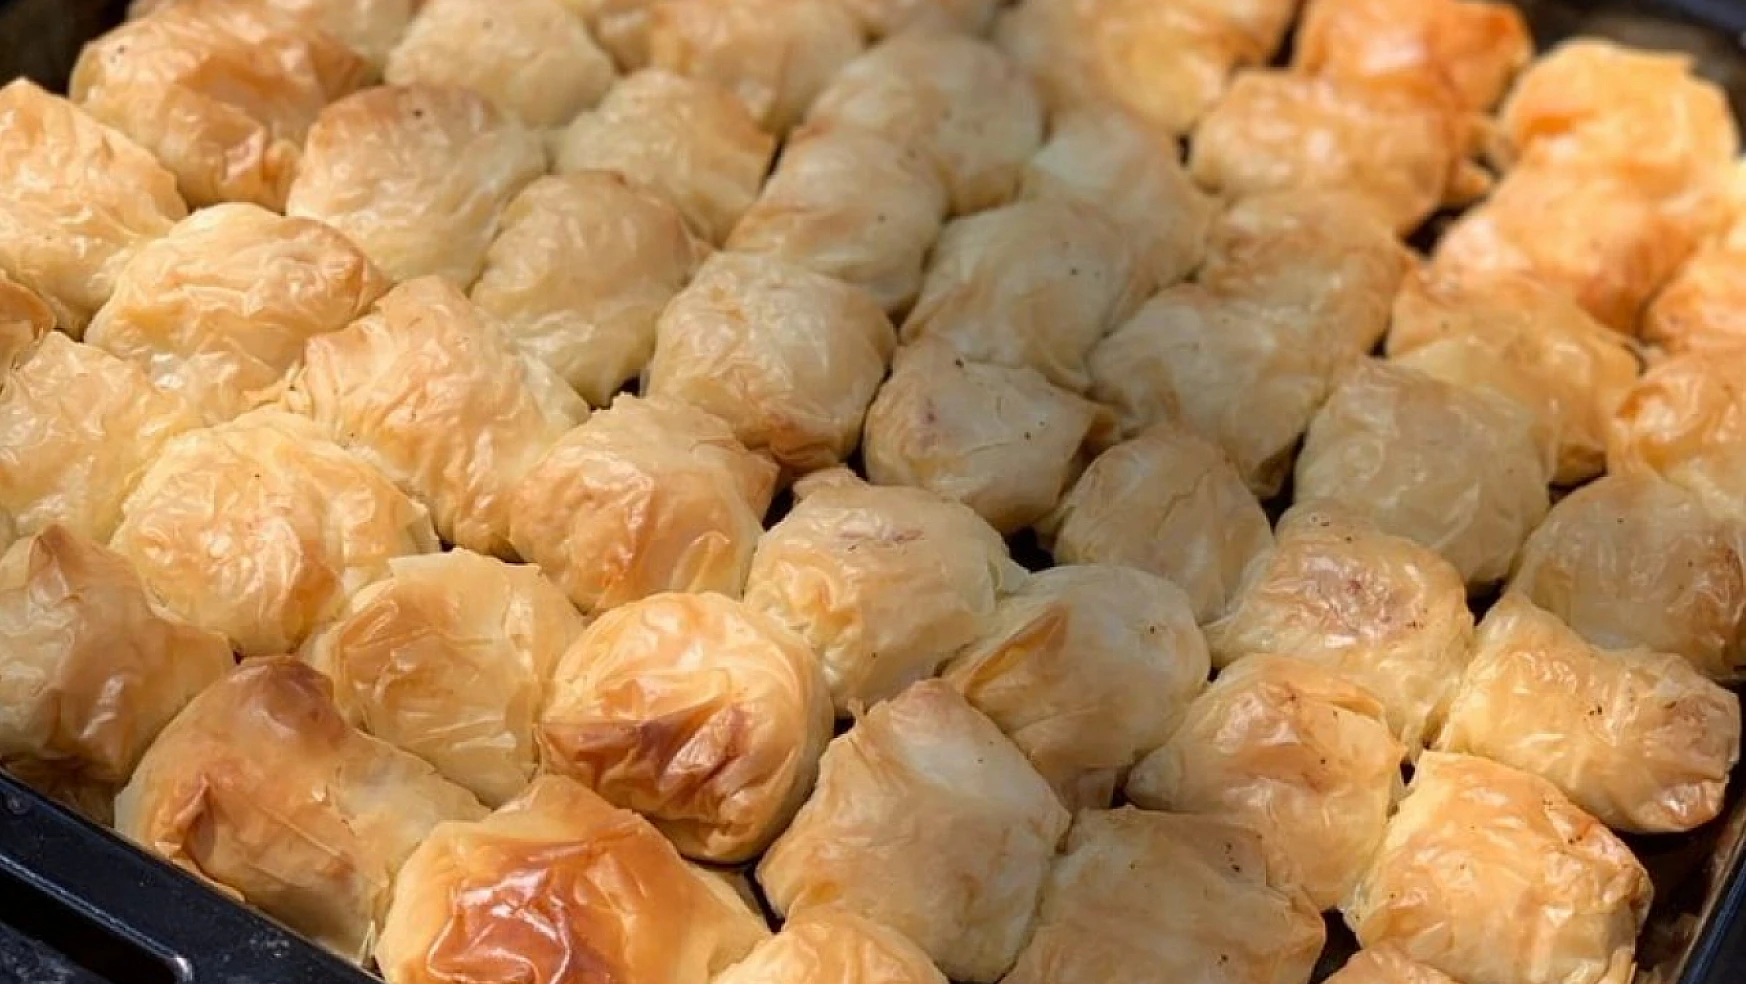 Afyon'un geleneksel lezzetin favorisi: Gülvarak tatlısı tarifiyle sofralarınızı renklendirin!